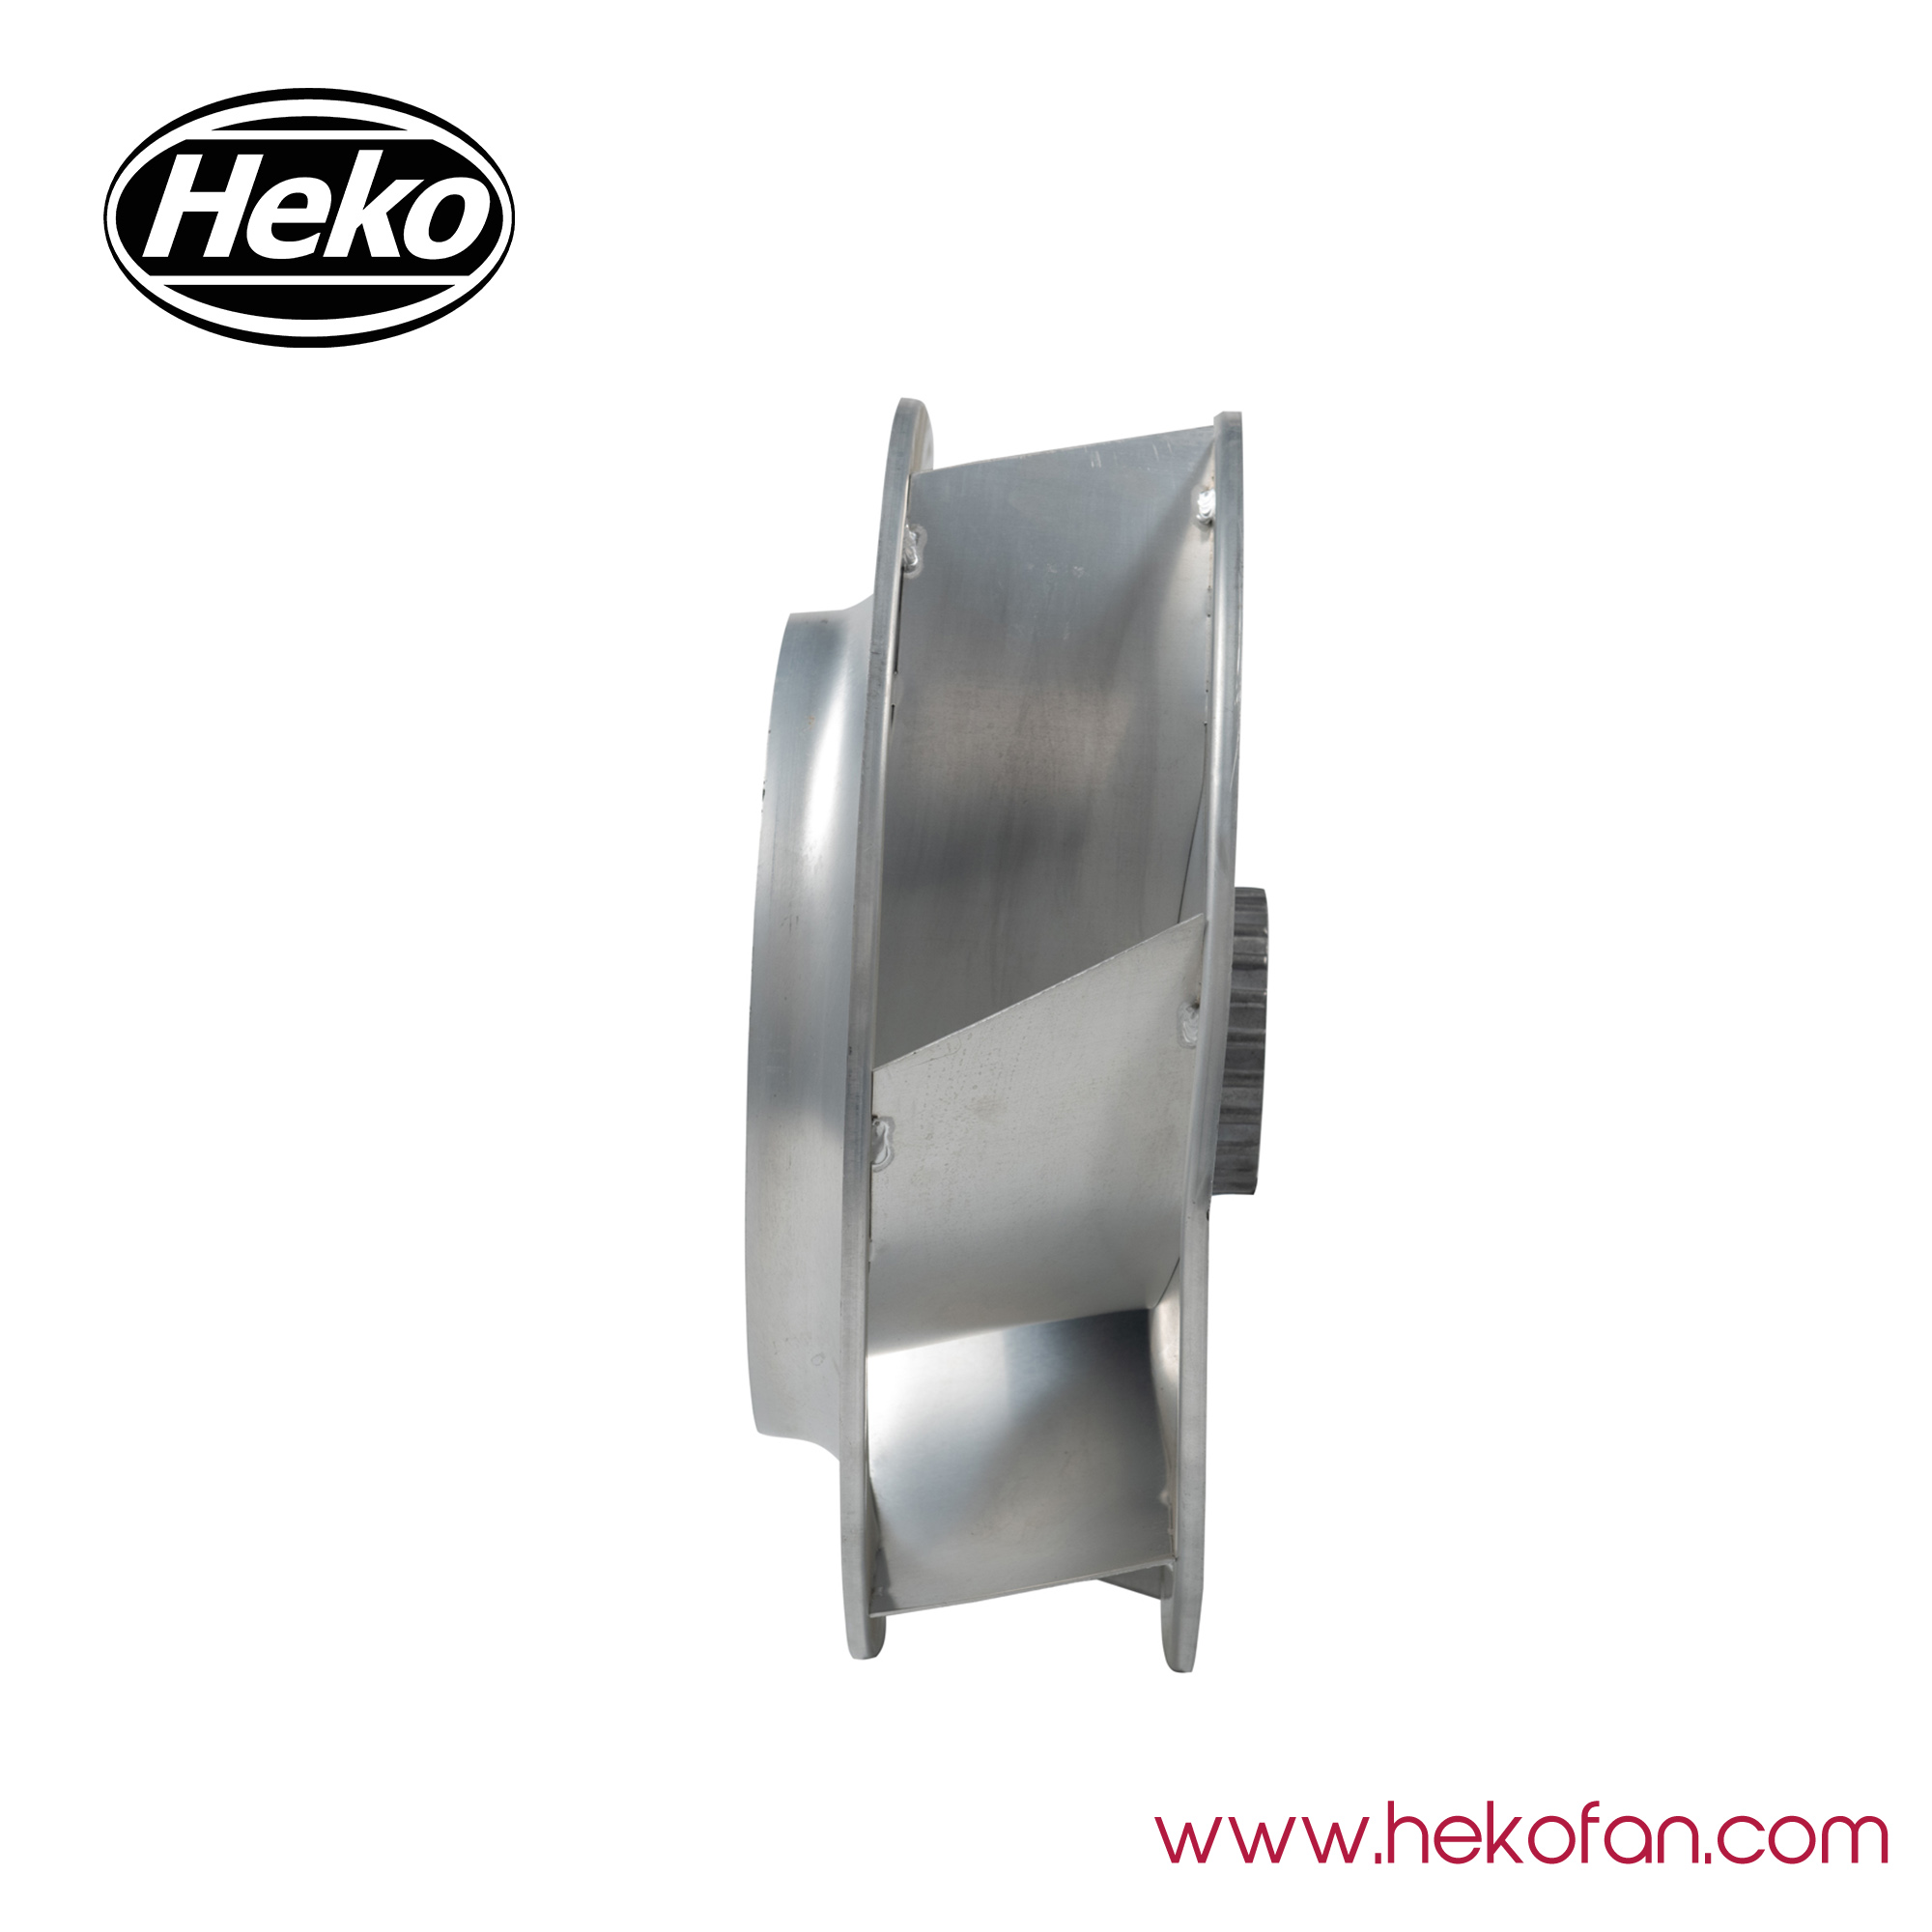 HEKO DC400mm Aluminum Impeller Silent Centrifugal Air Blower